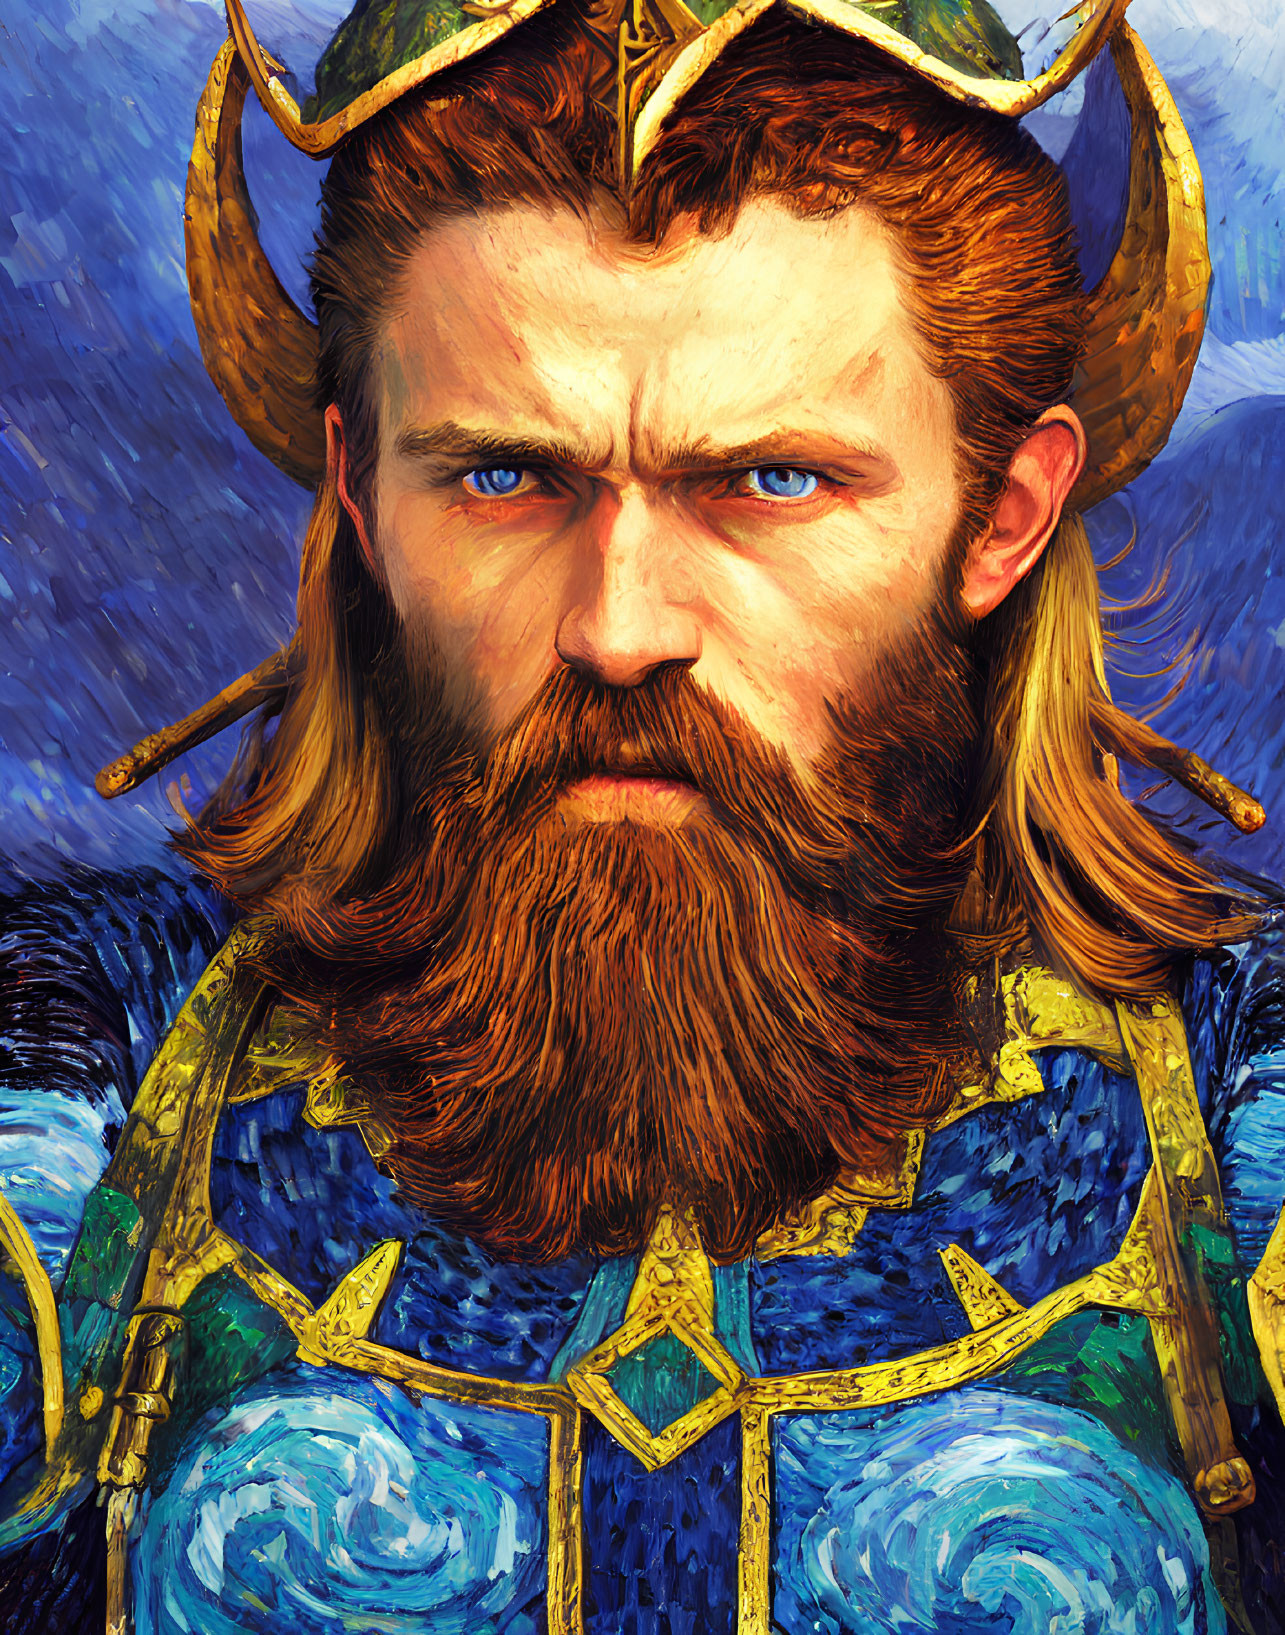 Bearded man in Viking helmet and ornate blue-gold armor